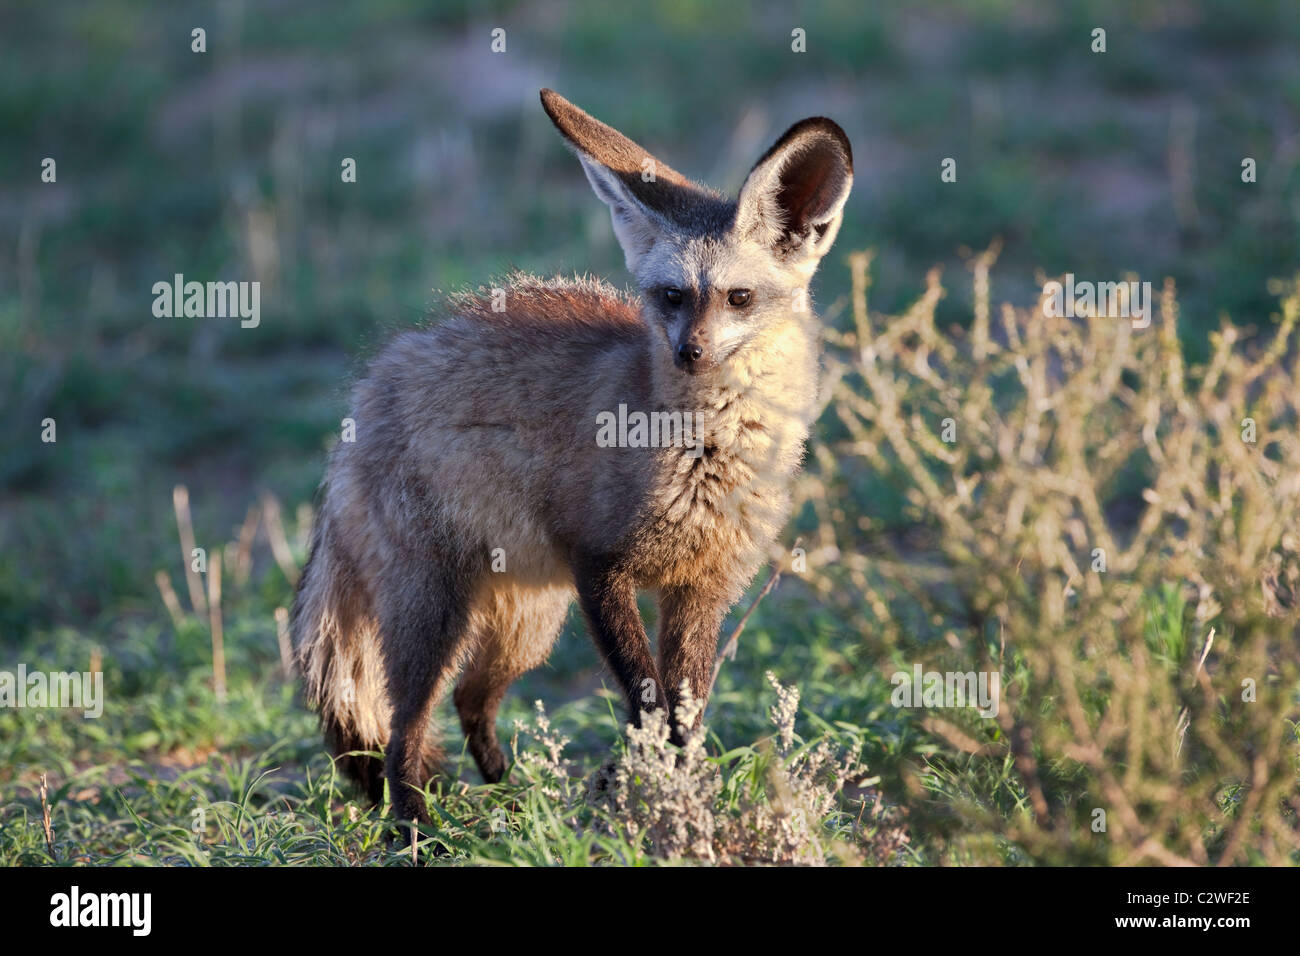 Hieb-eared Fuchs, Otocyon Megalotis Kgalagadi Transfrontier Park, Südafrika Stockfoto